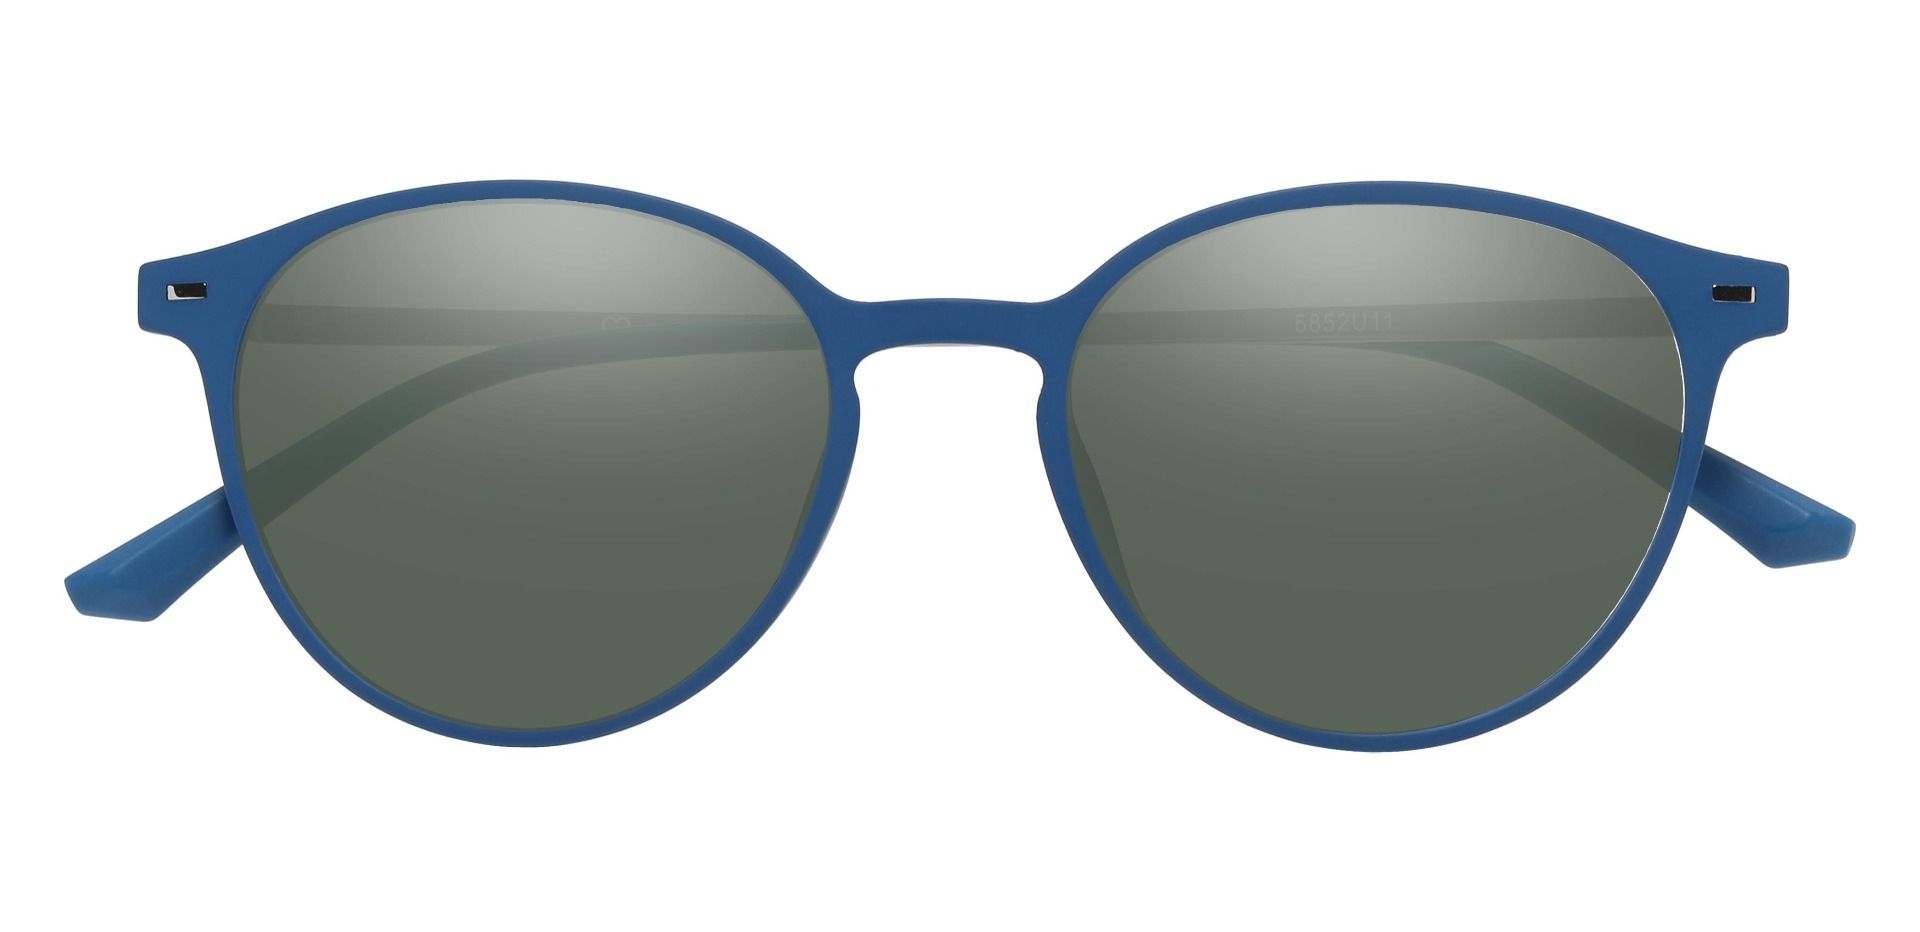 Springer Round Prescription Sunglasses - Blue Frame With Green Lenses